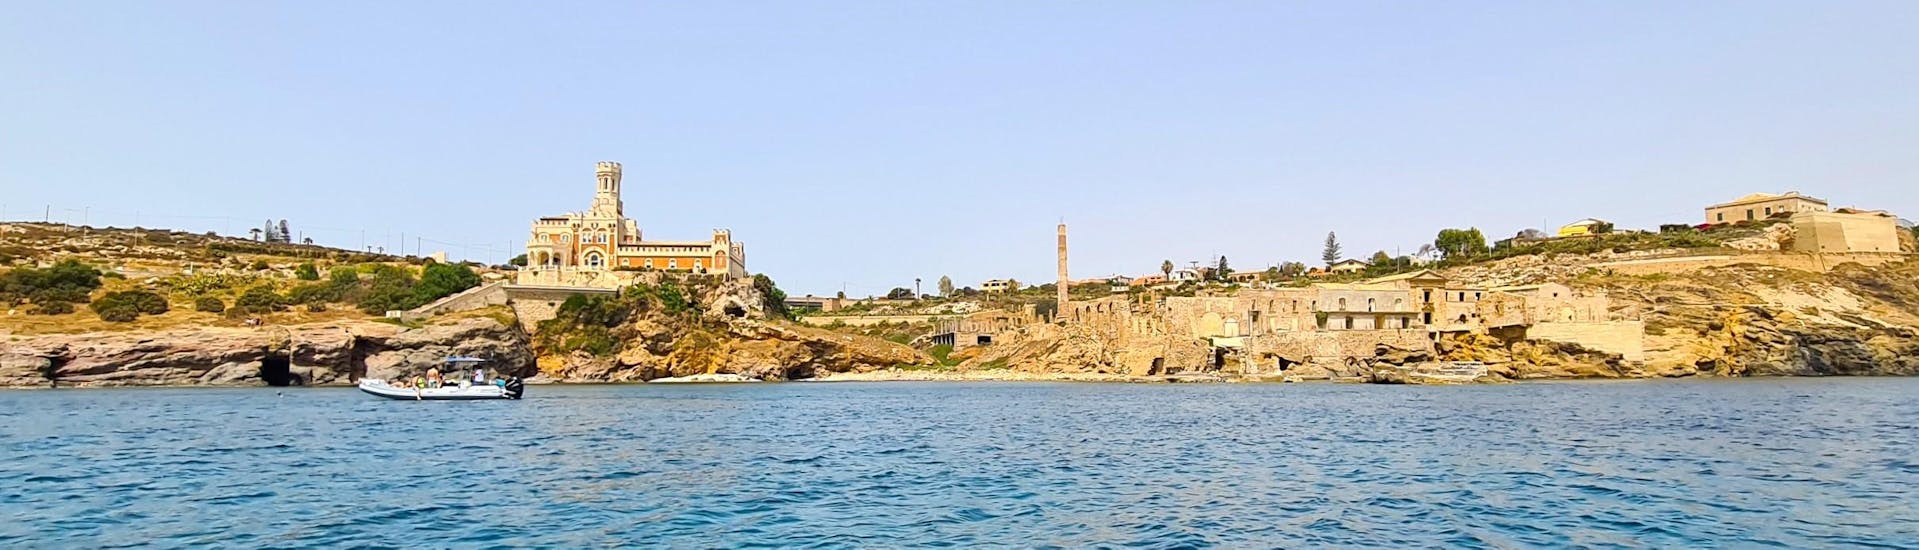 View of Portopalo di Capo Passero castle with Ioniam Rent Boat Avola.